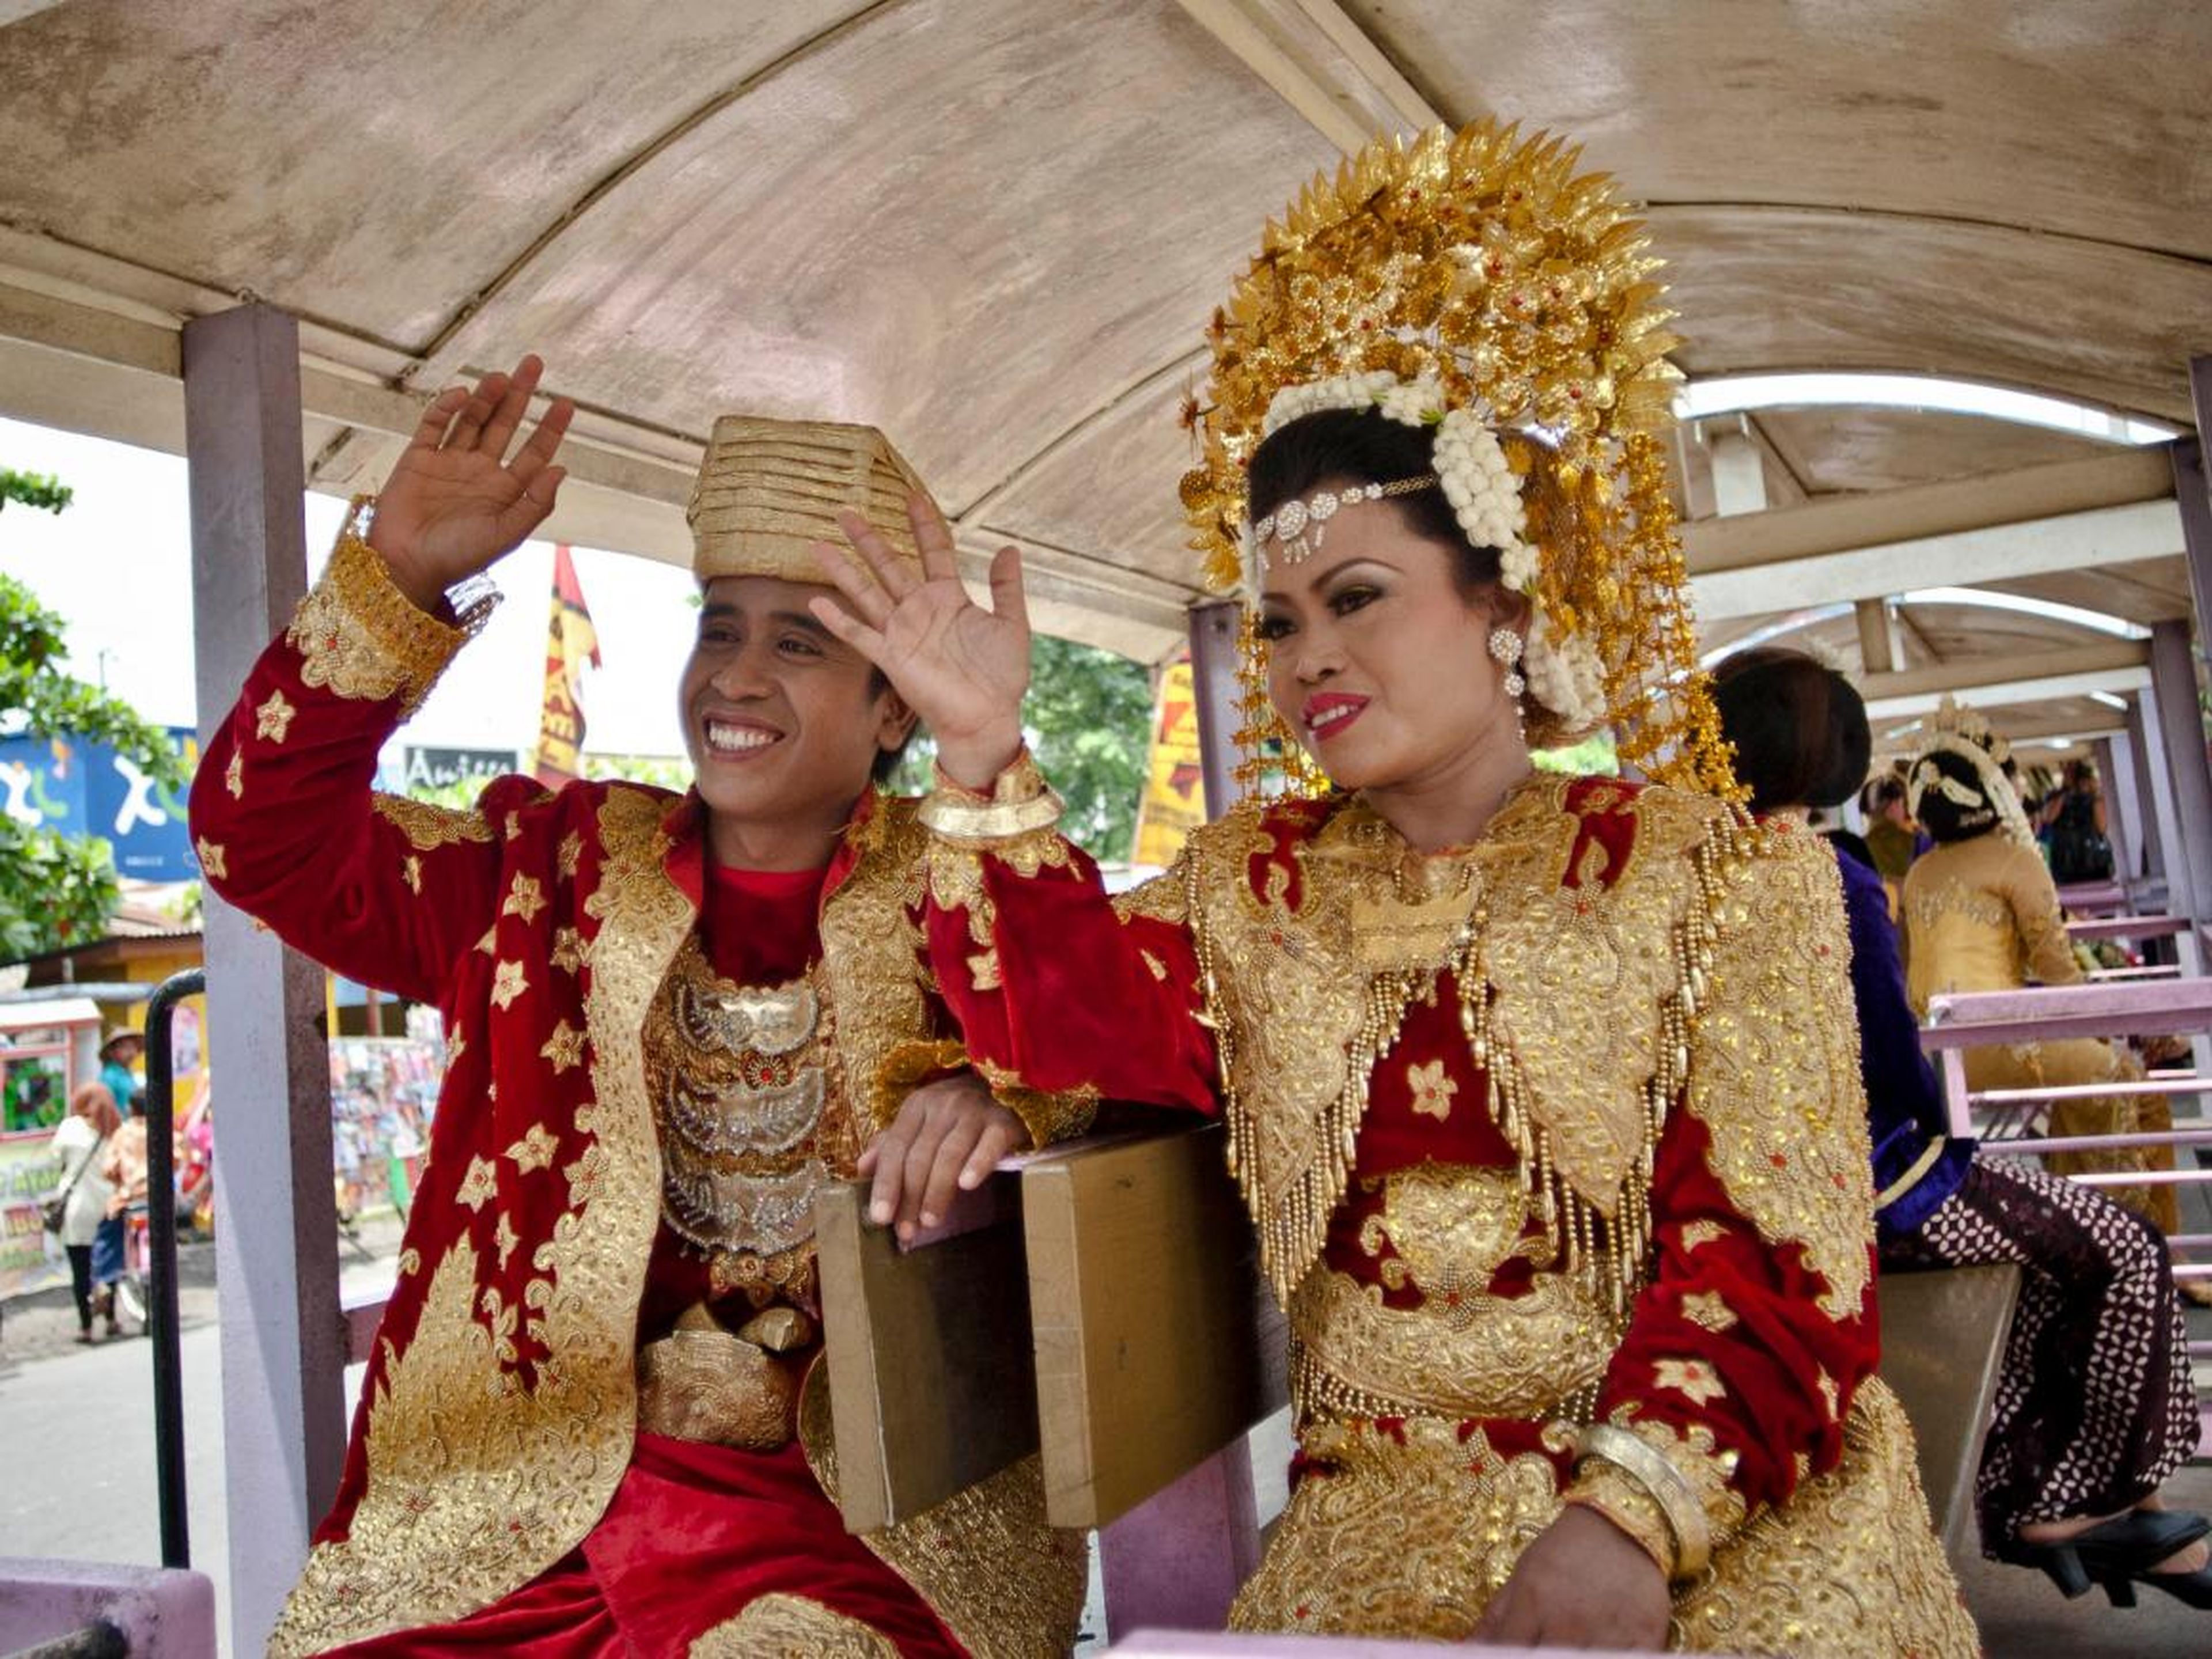 Casi 8.000 islas habitadas componen Indonesia, y la moda varía según la región.